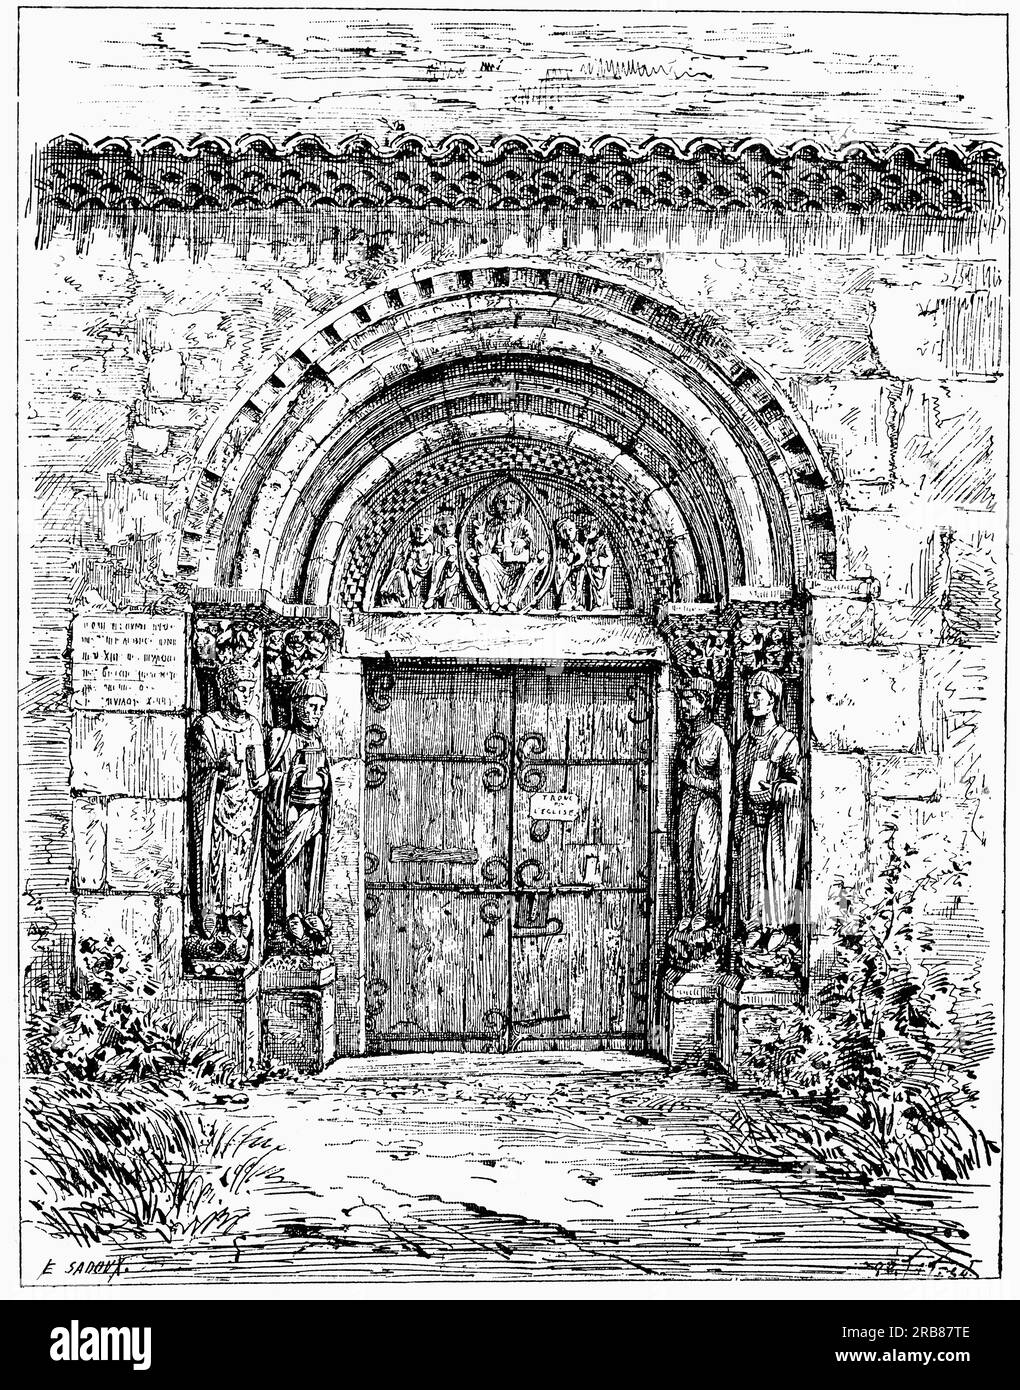 Illustration du début du 19e siècle d'une porte romane menant à l'ancienne cathédrale catholique romaine construite entre les 12e et 16e siècles à Saint-Bertrand-de-Comminges, haute-Garonne, sud-ouest de la France. C'était le siège de l'ancien diocèse de Comminges. Banque D'Images